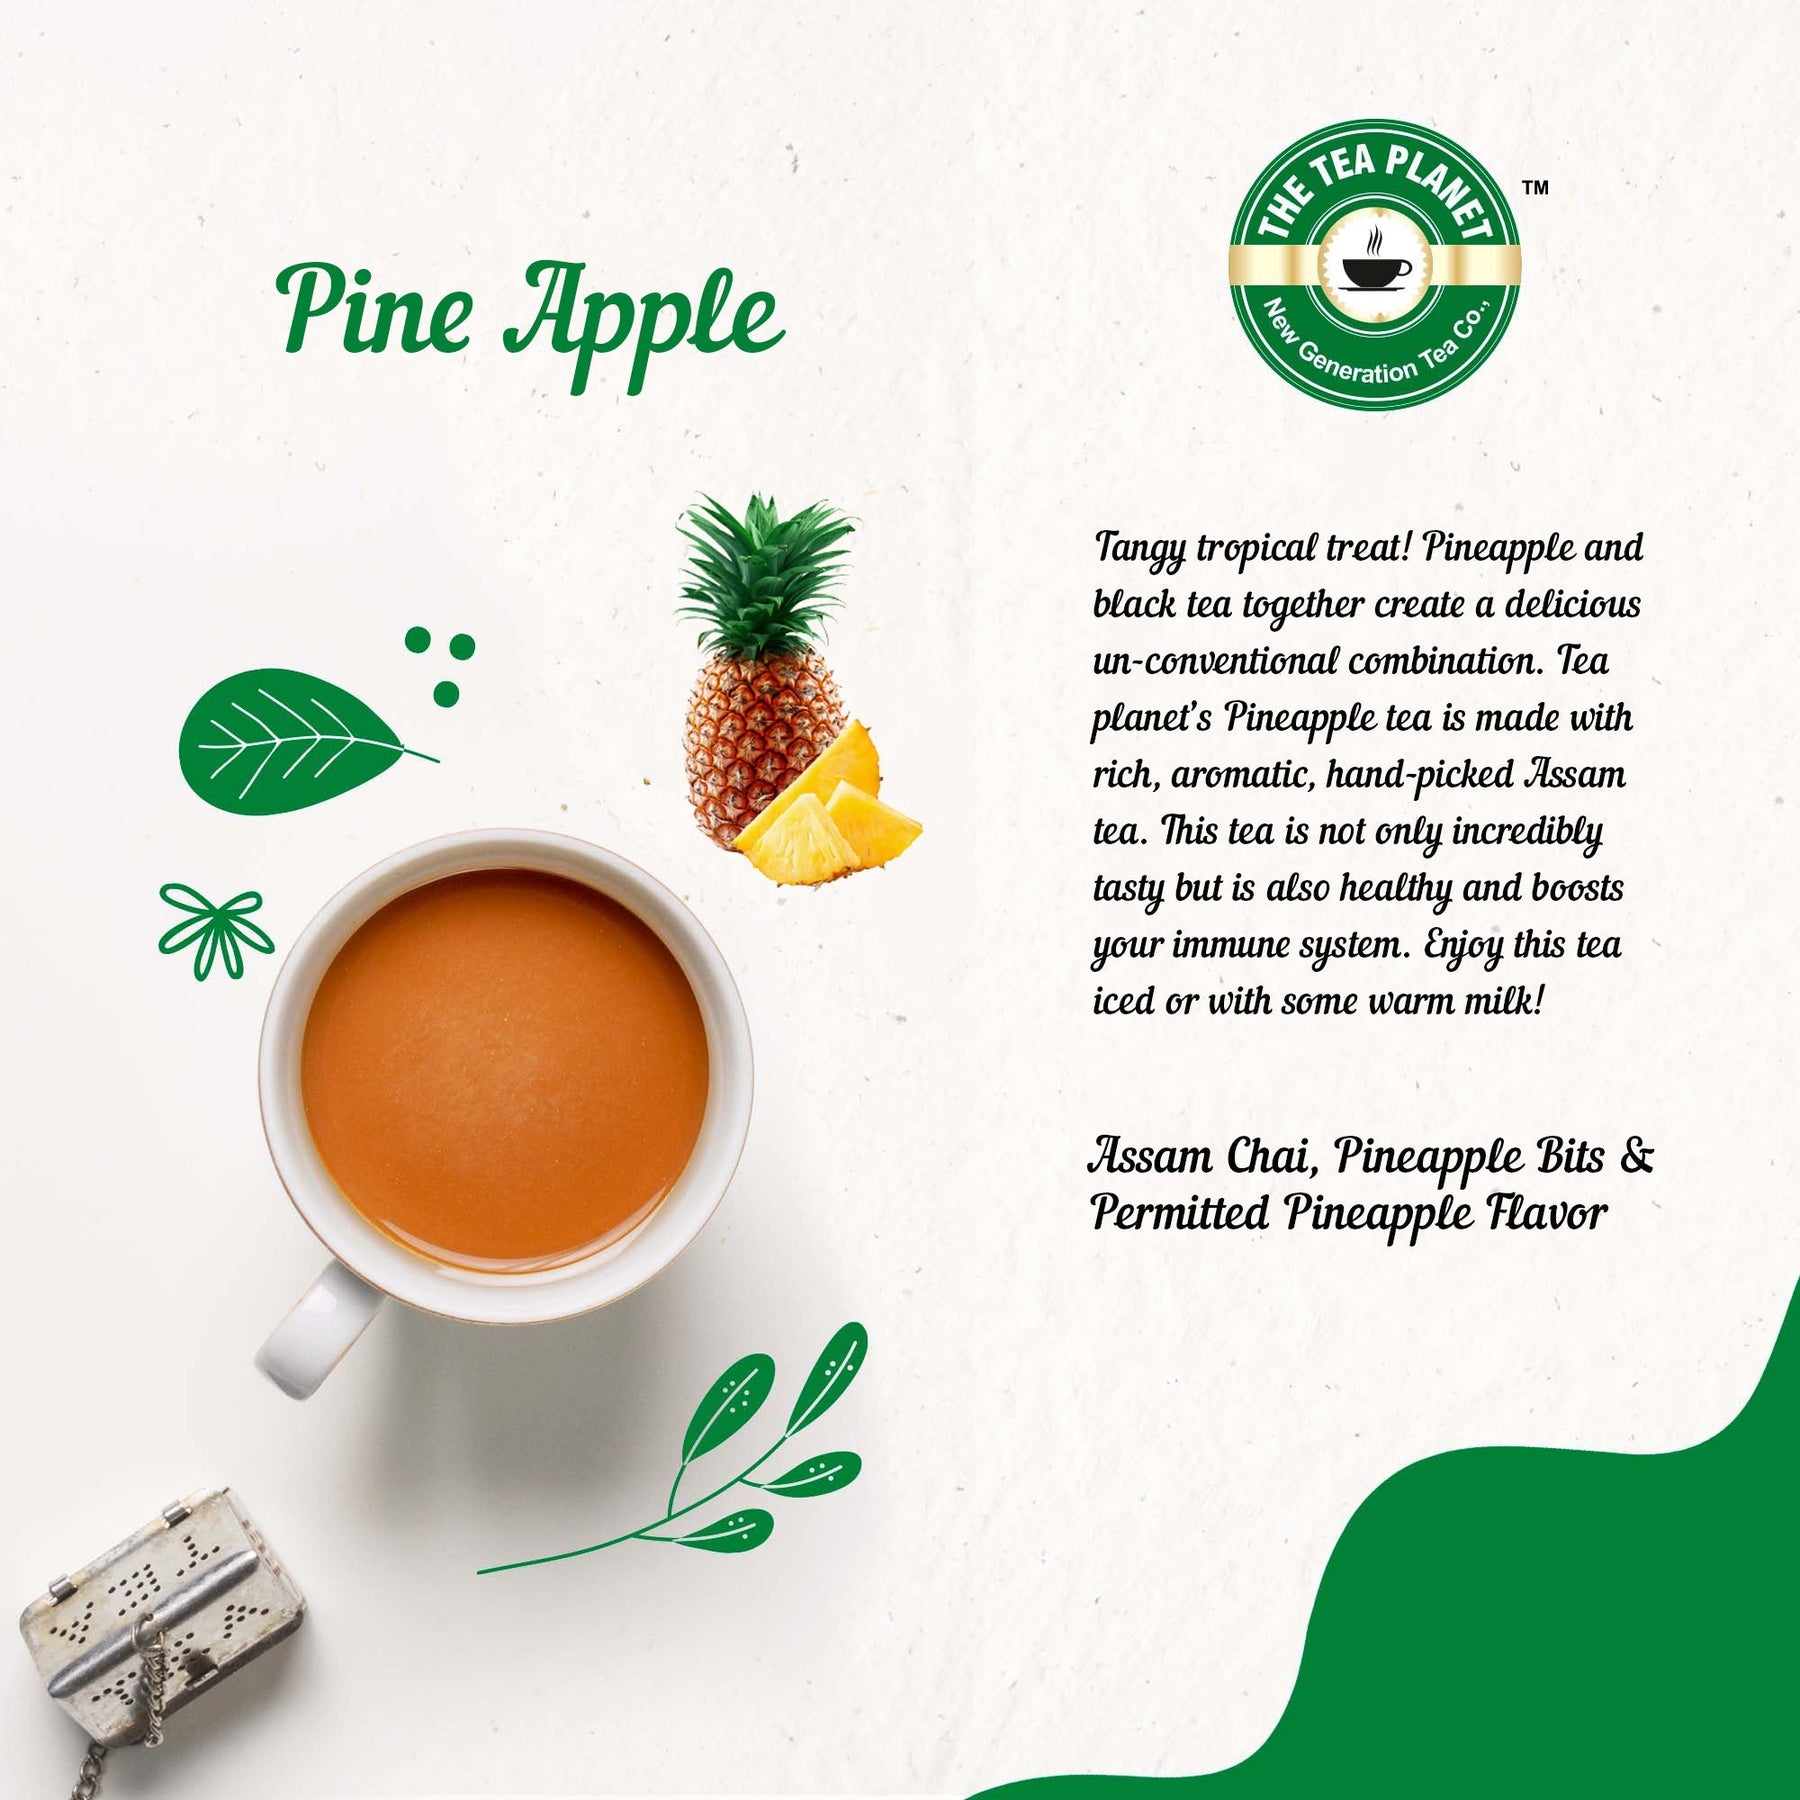 Pine Apple Flavored CTC Tea 3